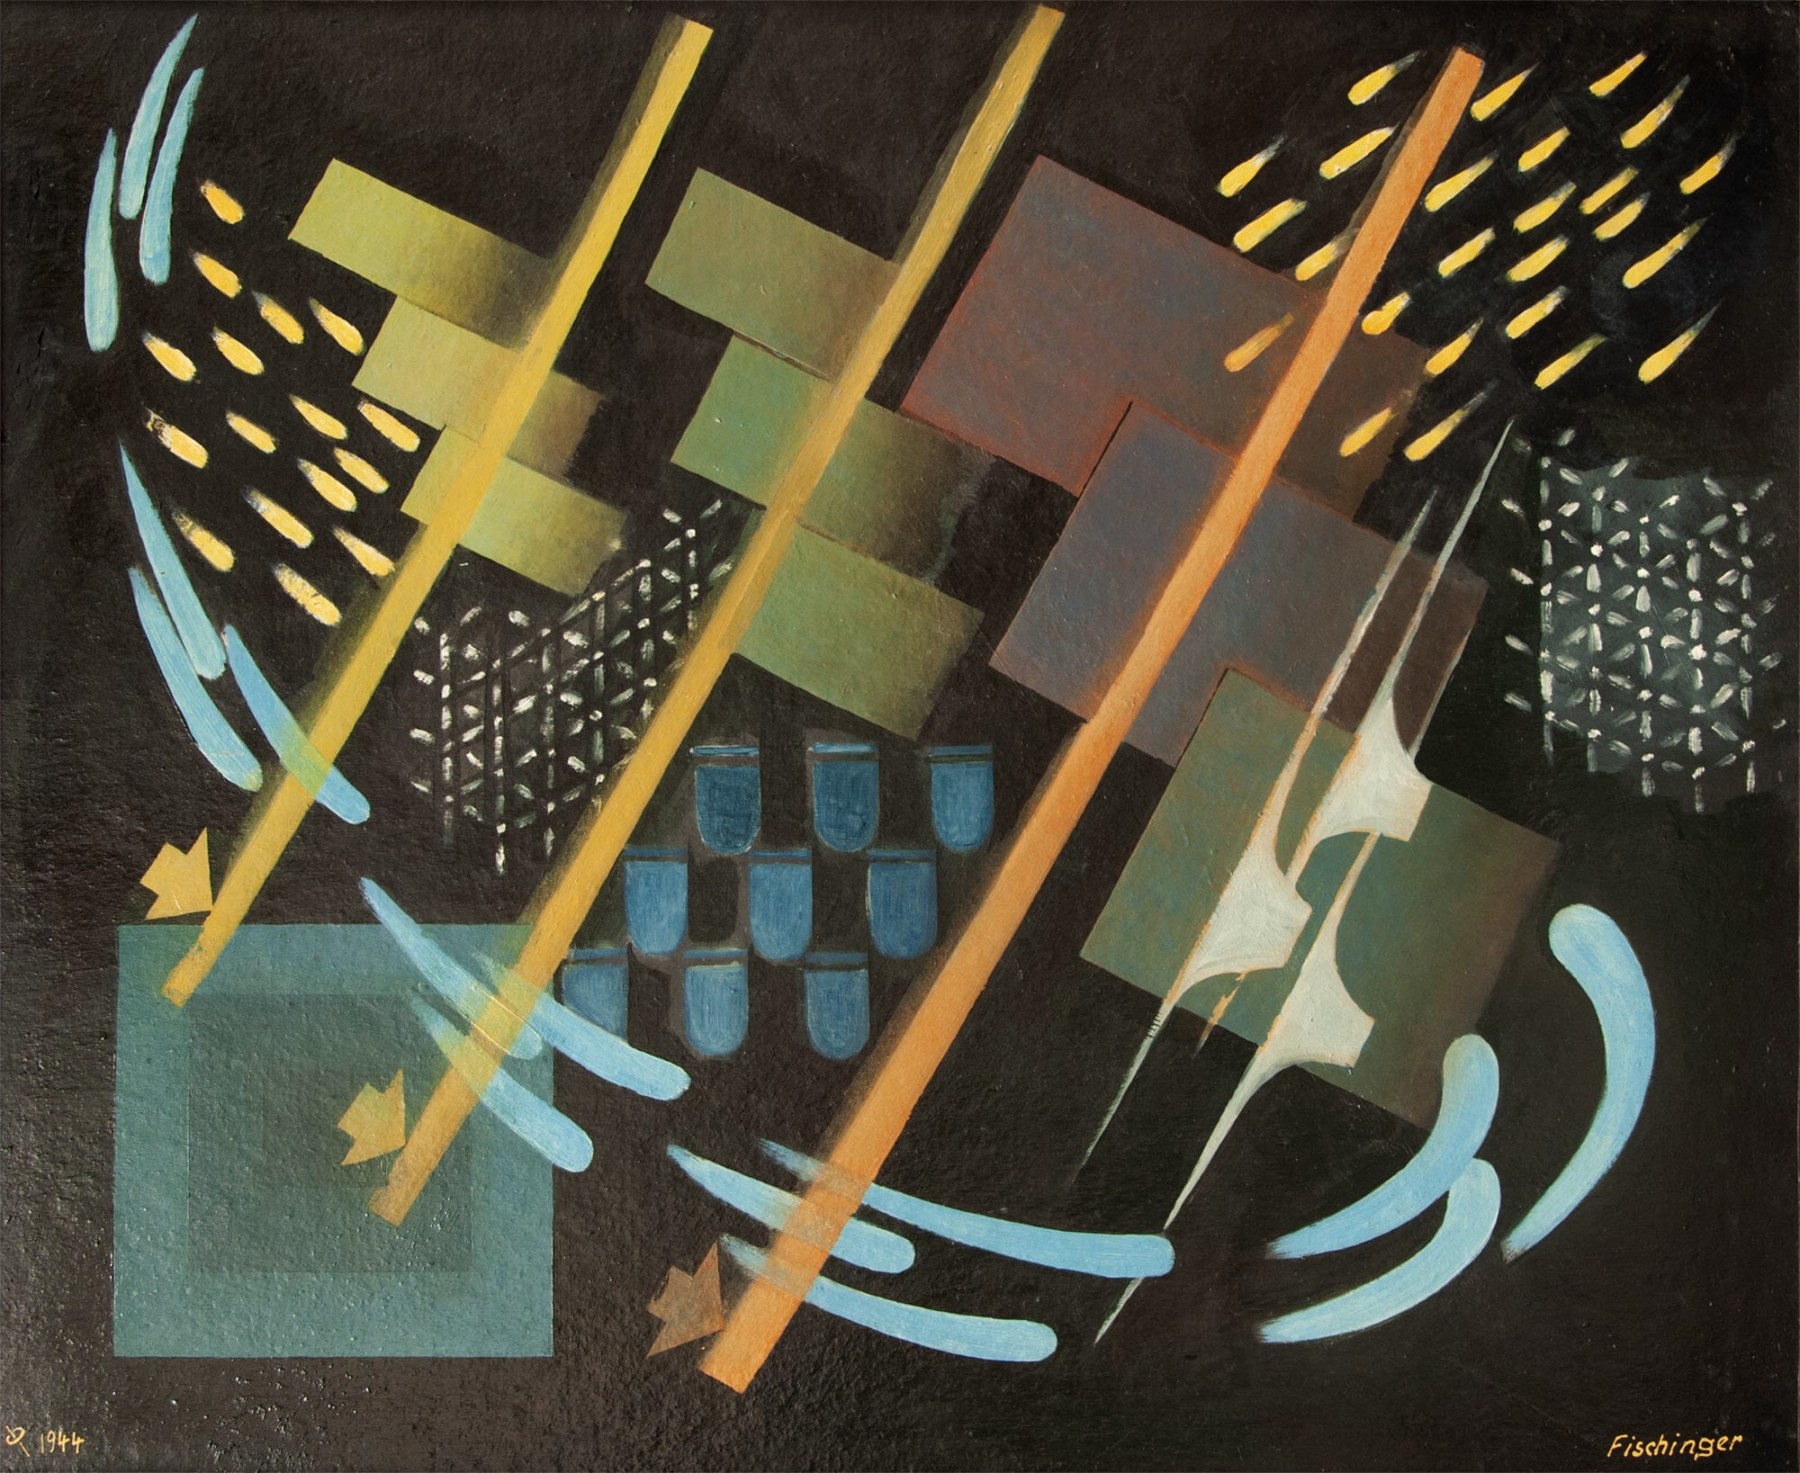 OSKAR FISCHINGER (1900-1967), Composition 44, 1944